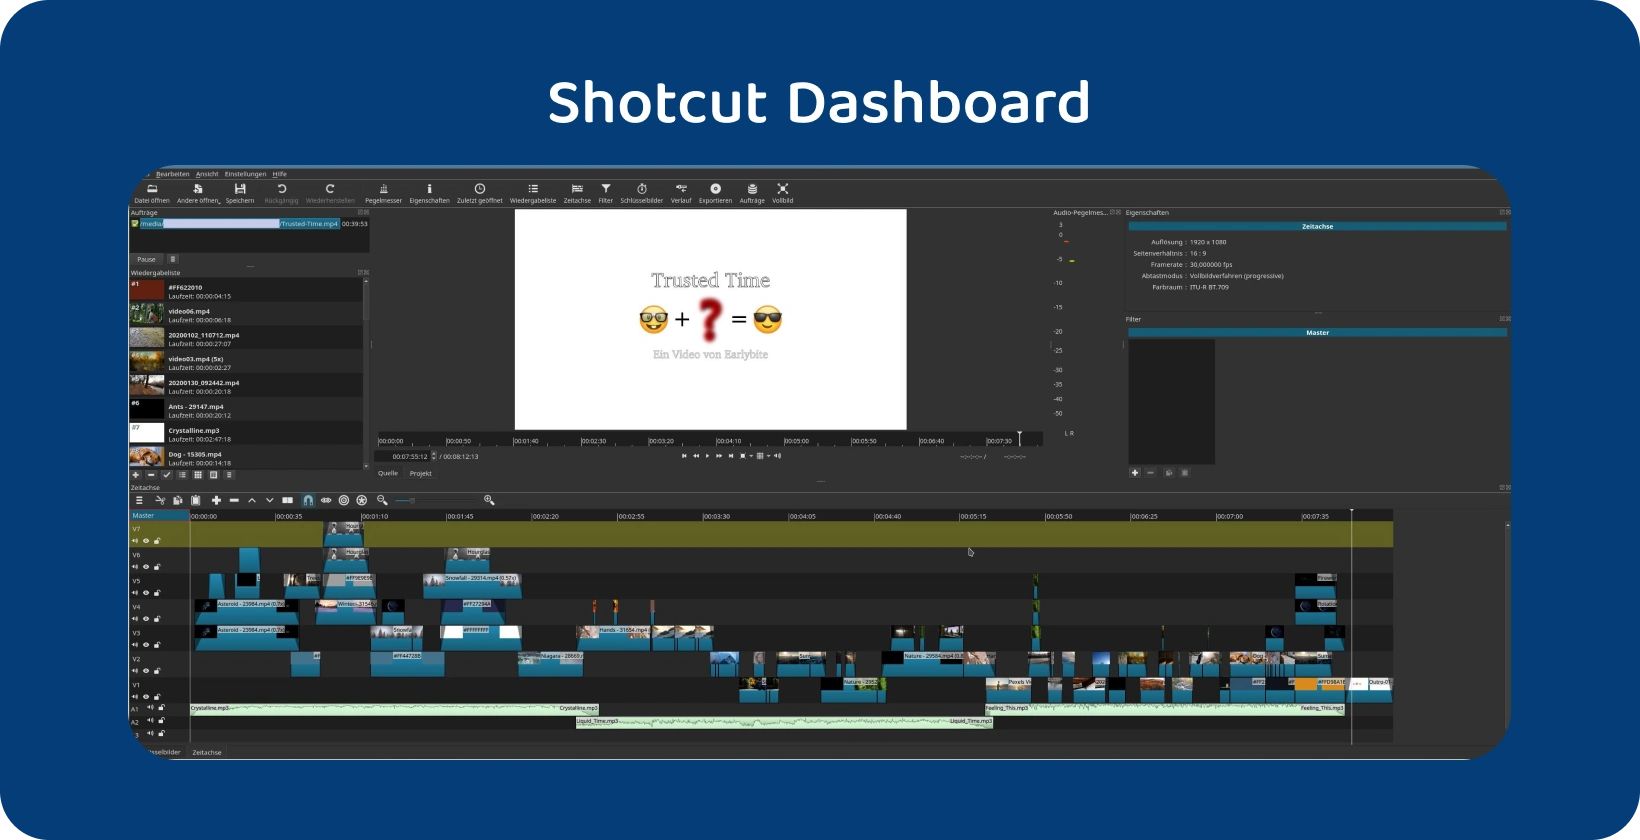 वीडियो संपादन सॉफ्टवेयर कई ट्रैक के साथ एक जटिल समयरेखा प्रदर्शित कर Shotcut, जो एक उन्नत परियोजना का संकेत देता है।